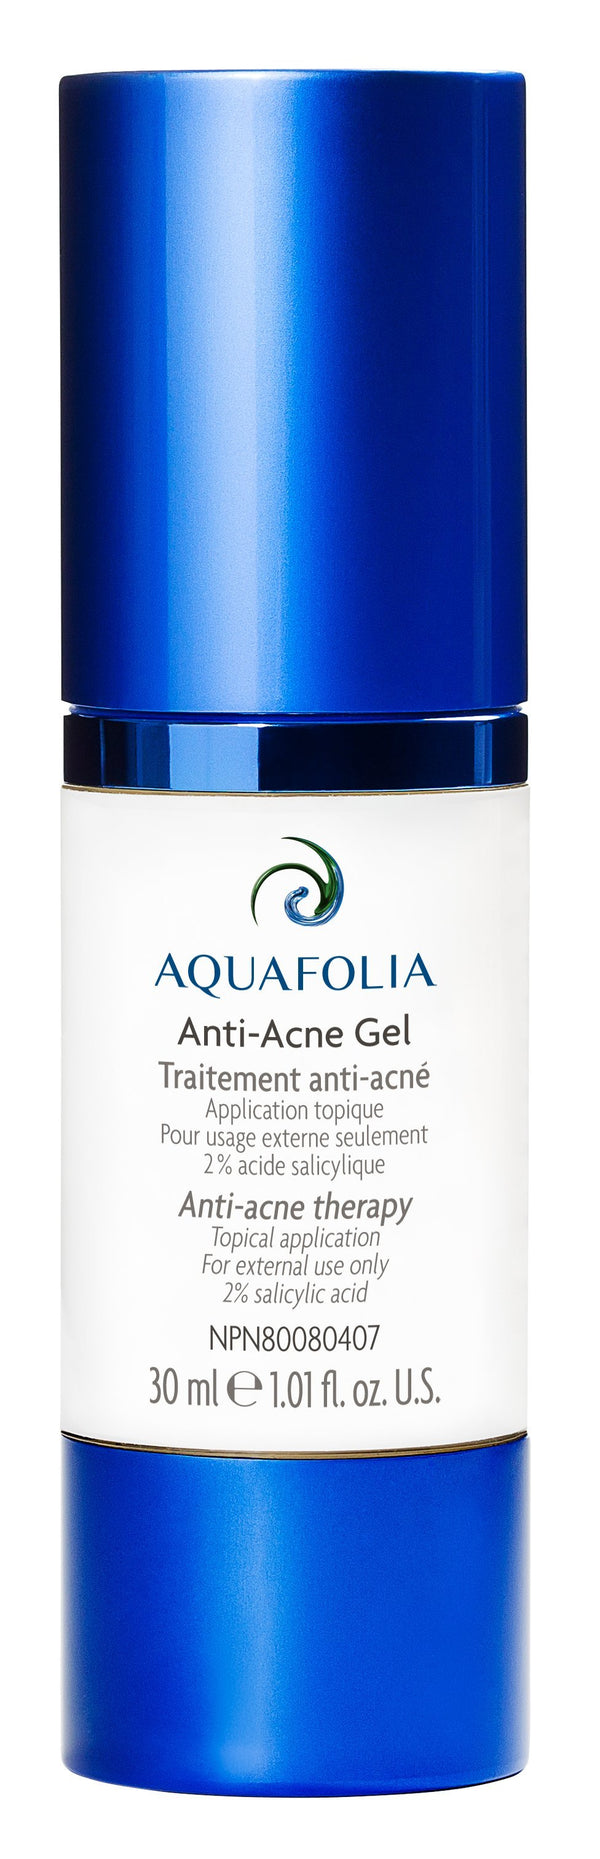 Anti-Acne Gel - cliniqueconceptm